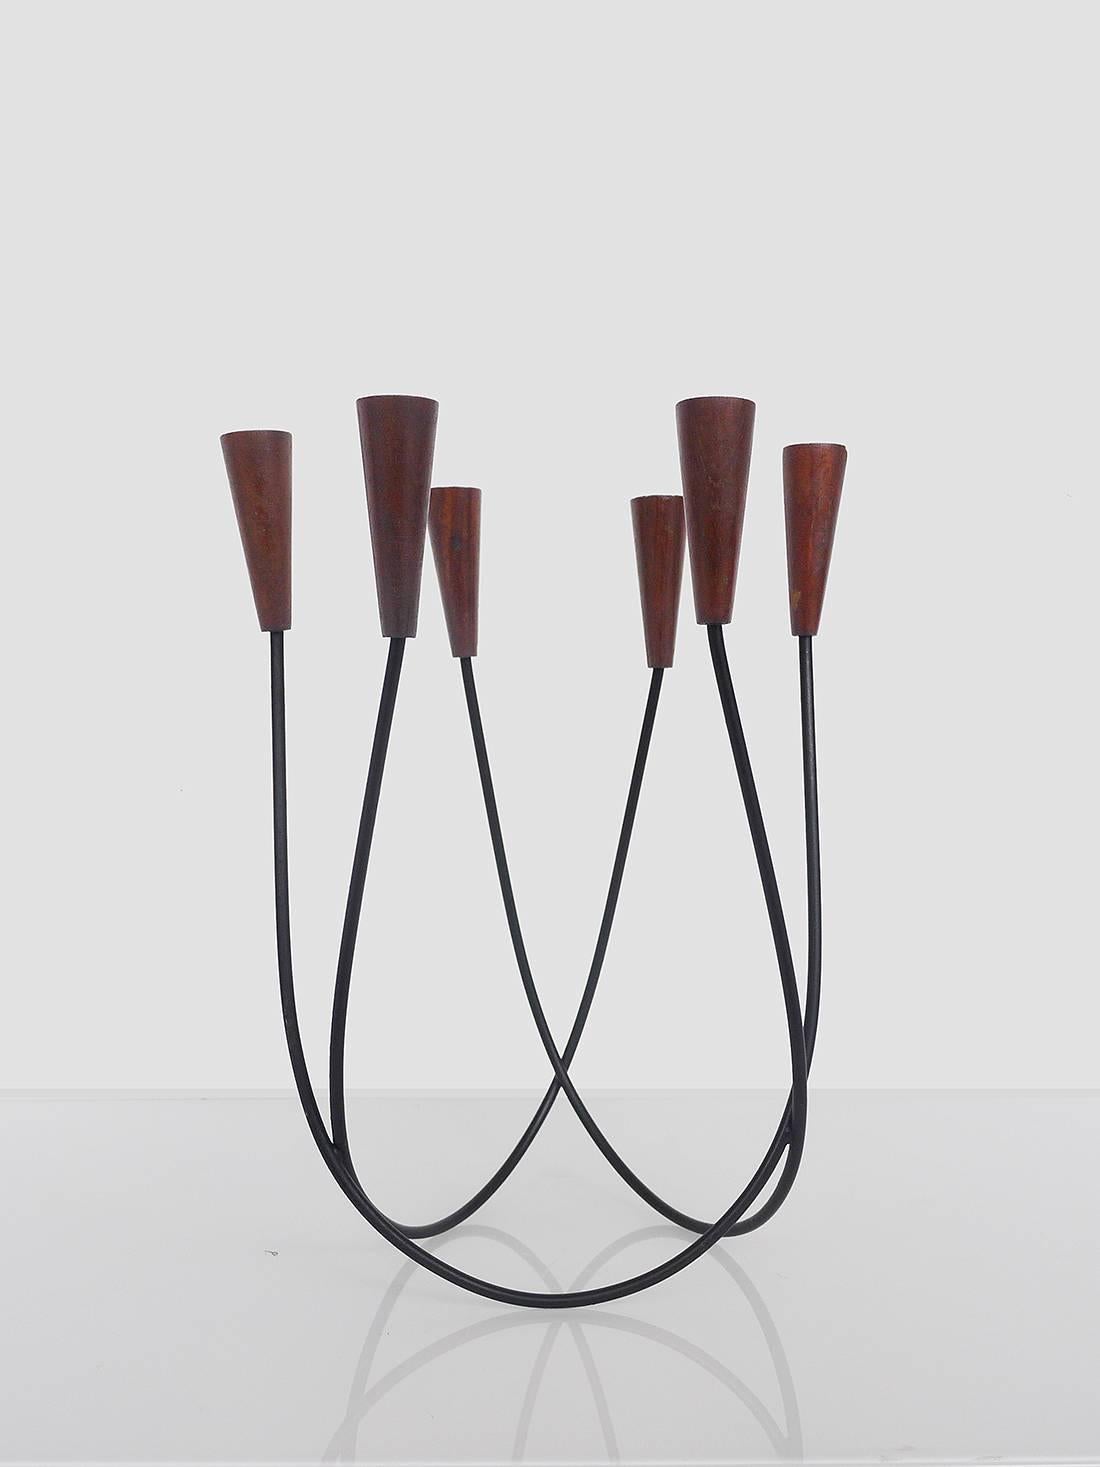 Sculptural Danish String Design Teak Candleholder Candlestick For Sale 1